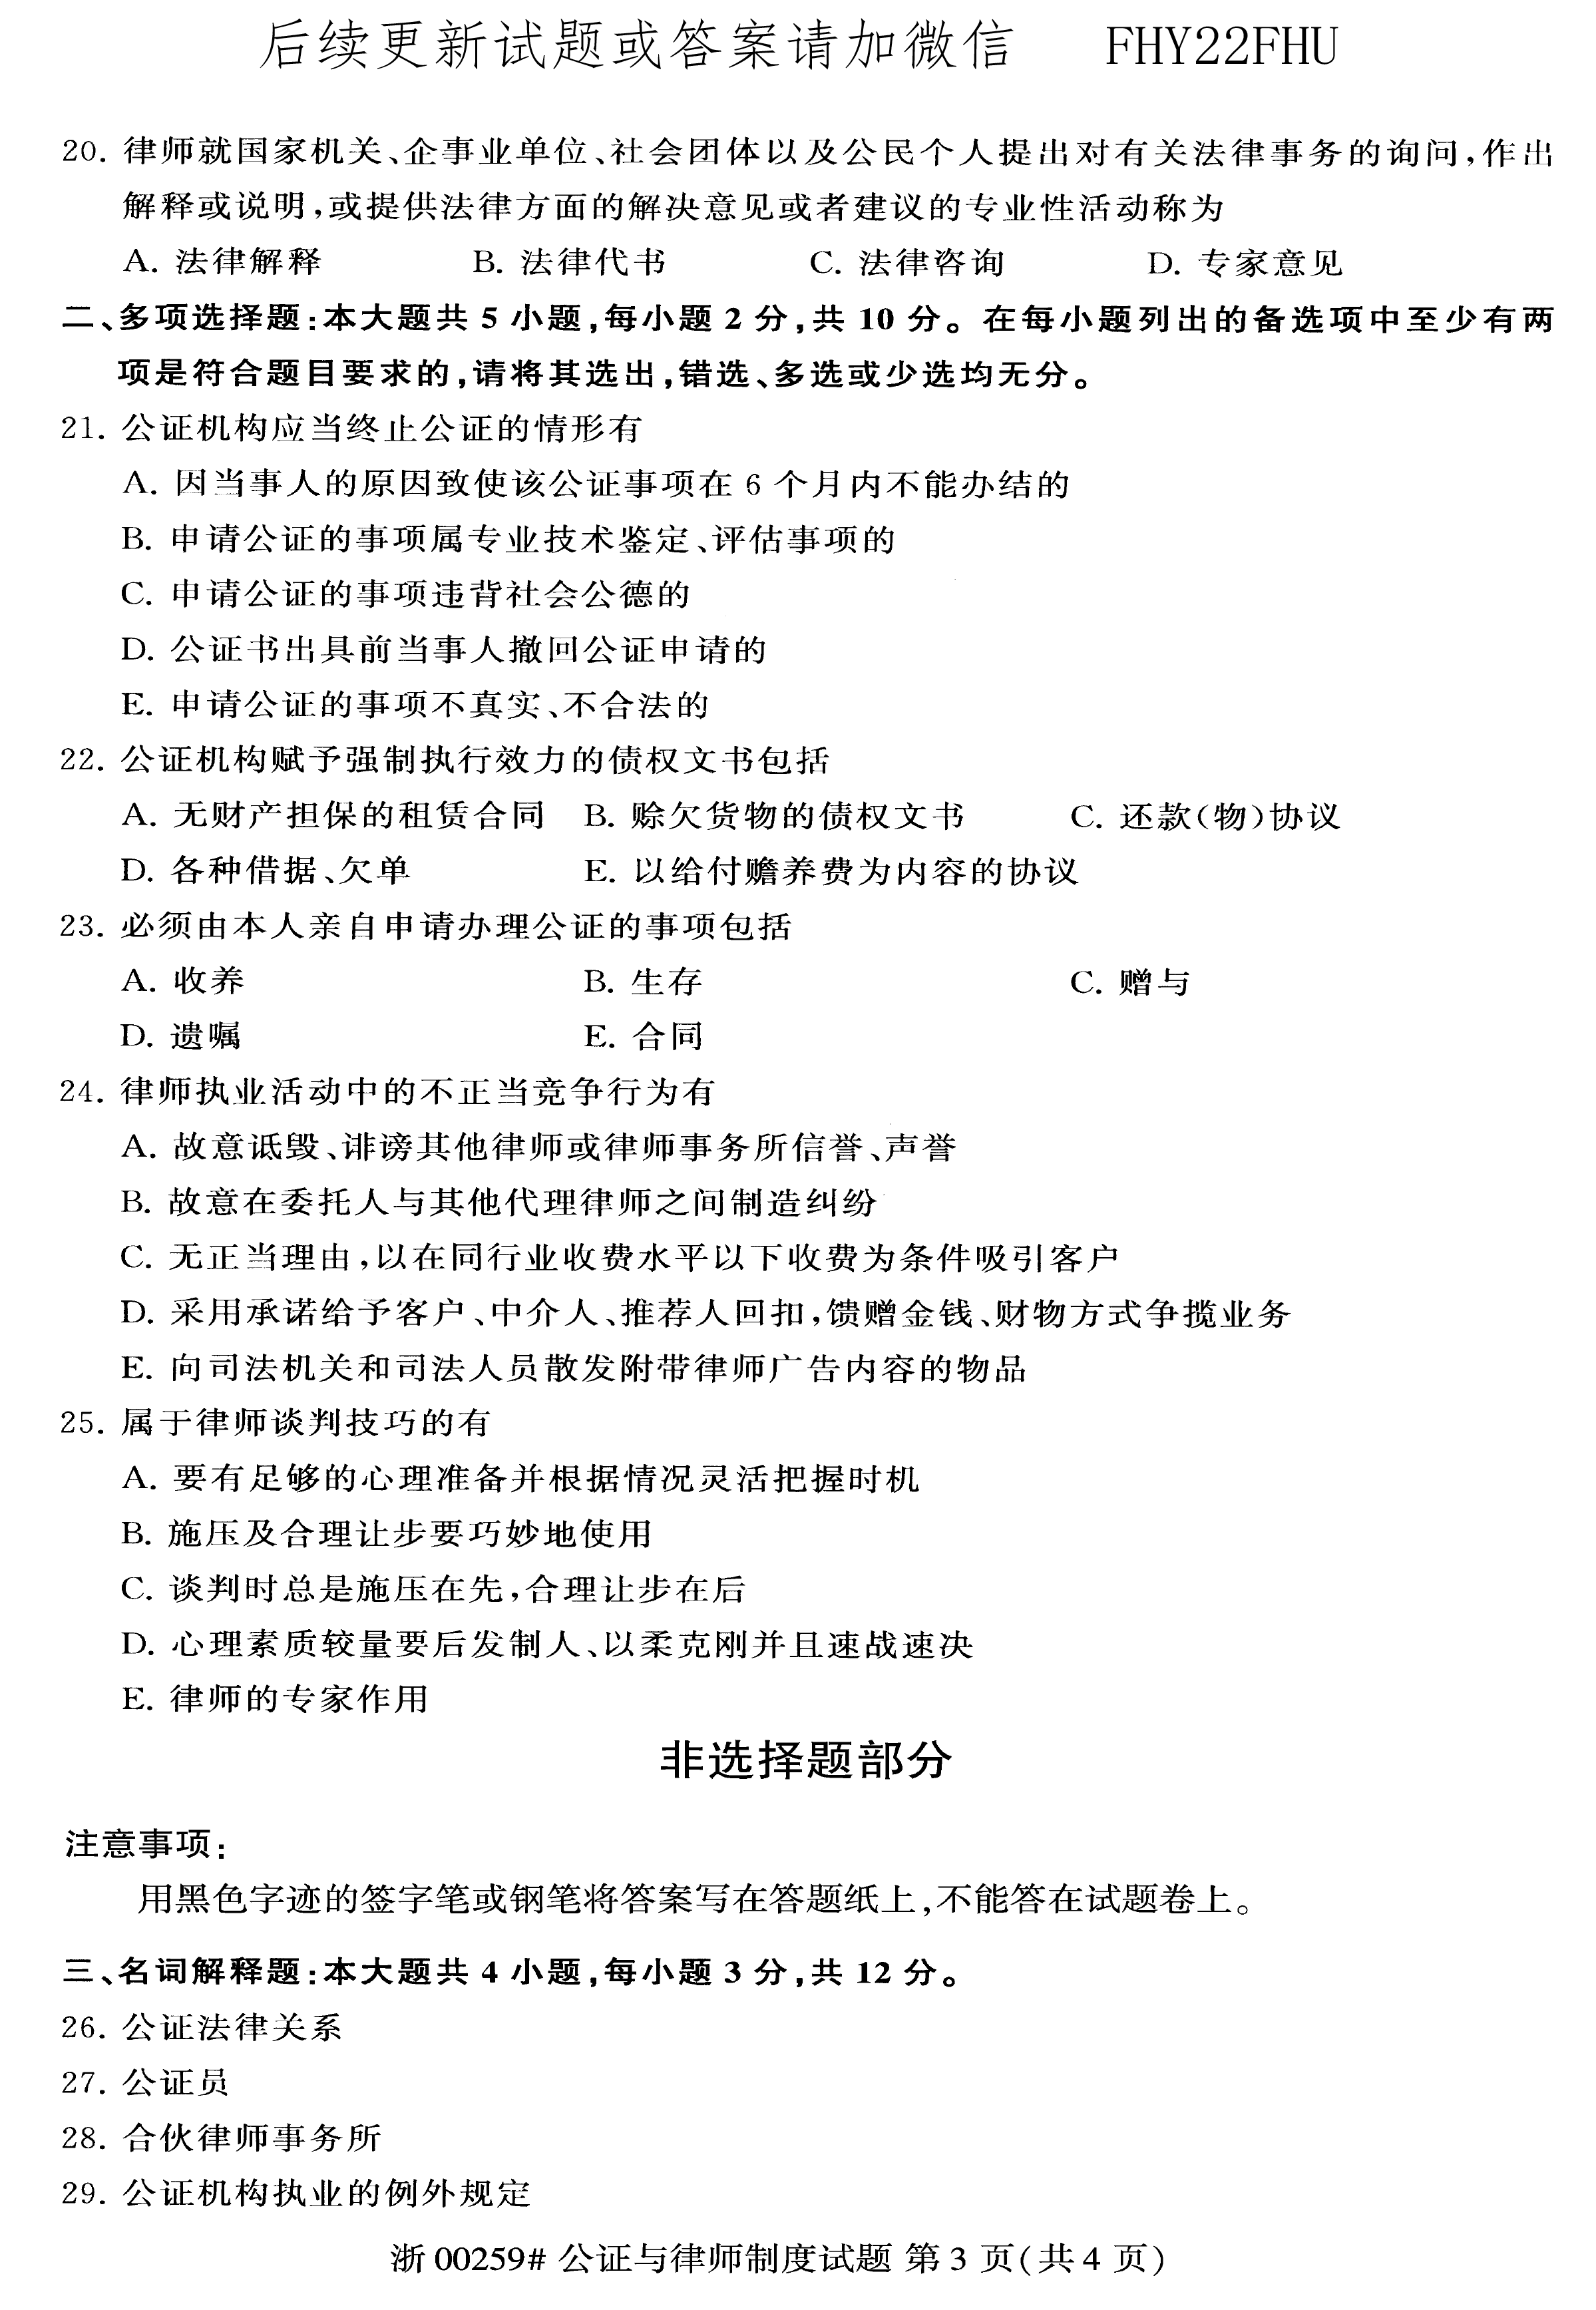 贵州2020年08月自考00259公证与律师制度真题及答案